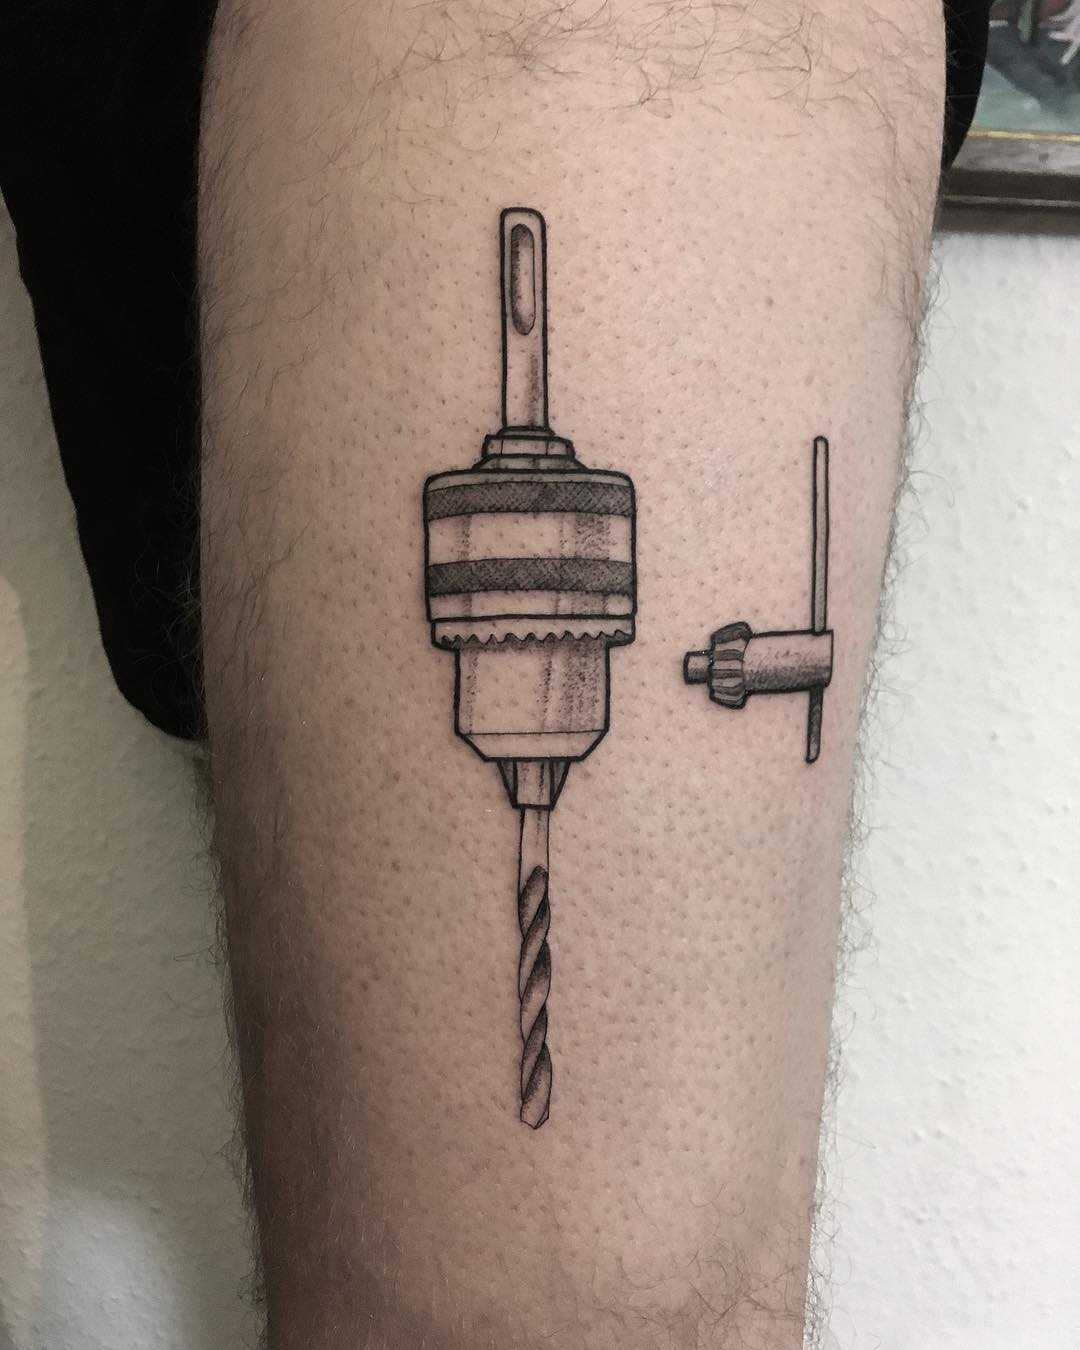 Drill by tattooist Spence @zz tattoo